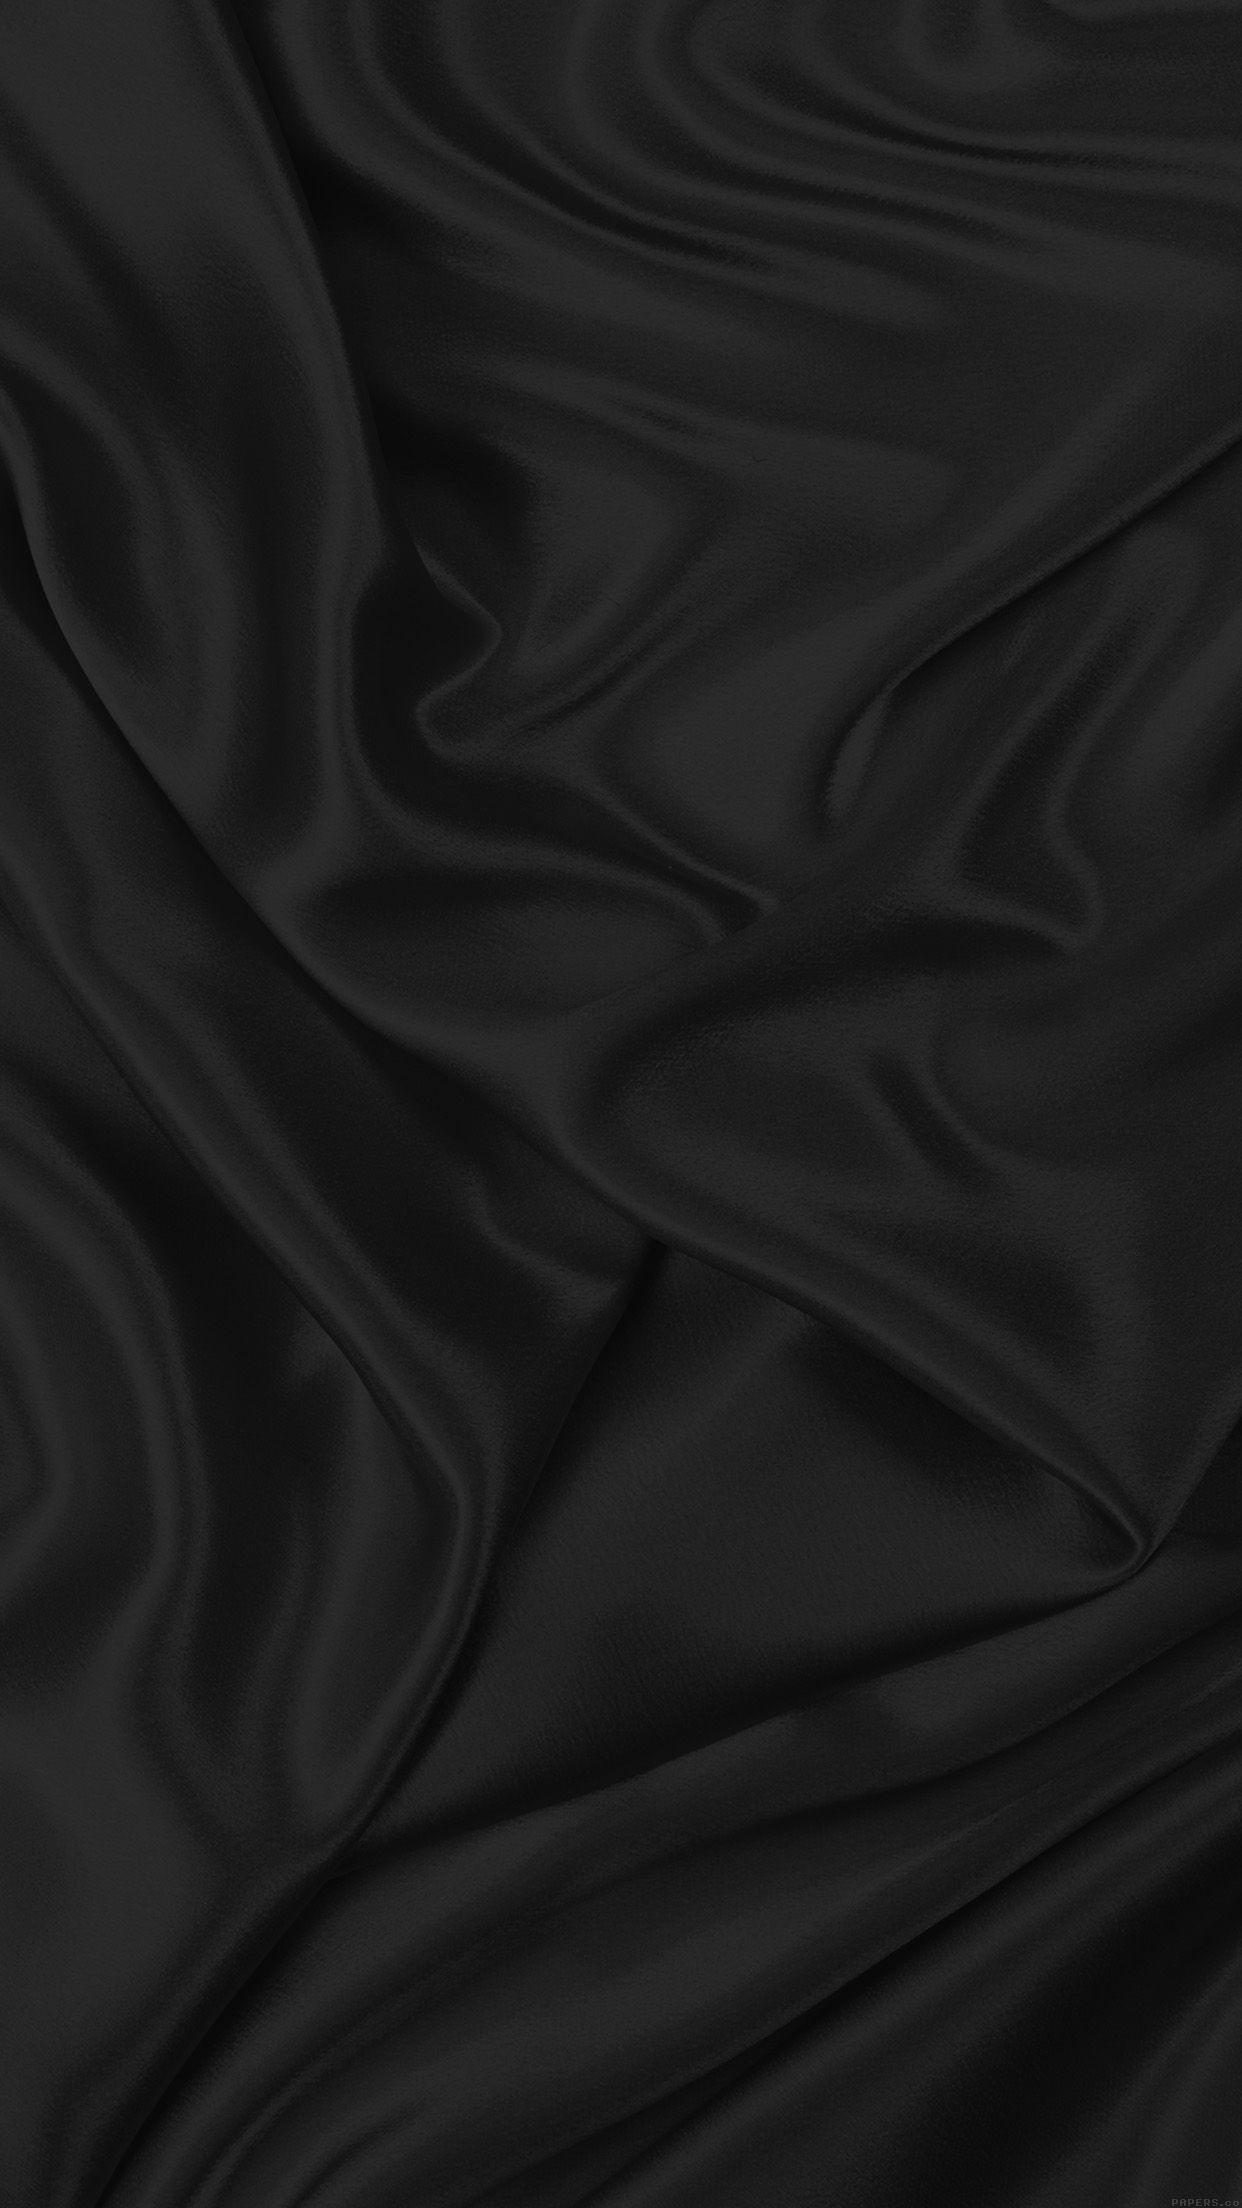 Black Velvet Wallpapers - Top Free Black Velvet Backgrounds